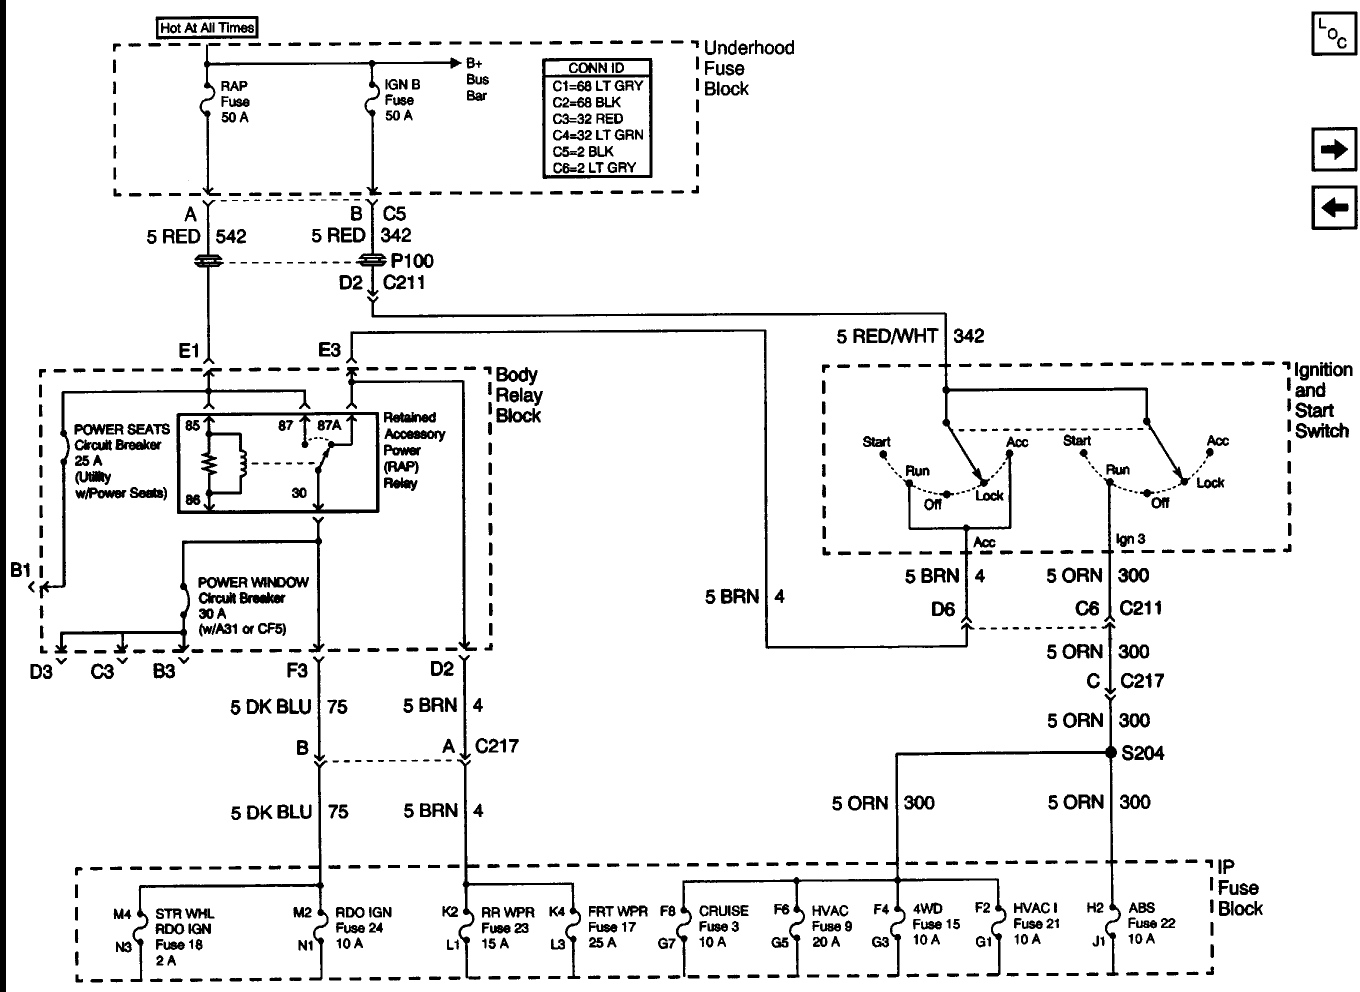 Anatomy of the Ignition Switch - Blazer Forum - Chevy Blazer Forums  1995 Chevy S10 Ignition Switch Wiring Diagram    Blazer Forum